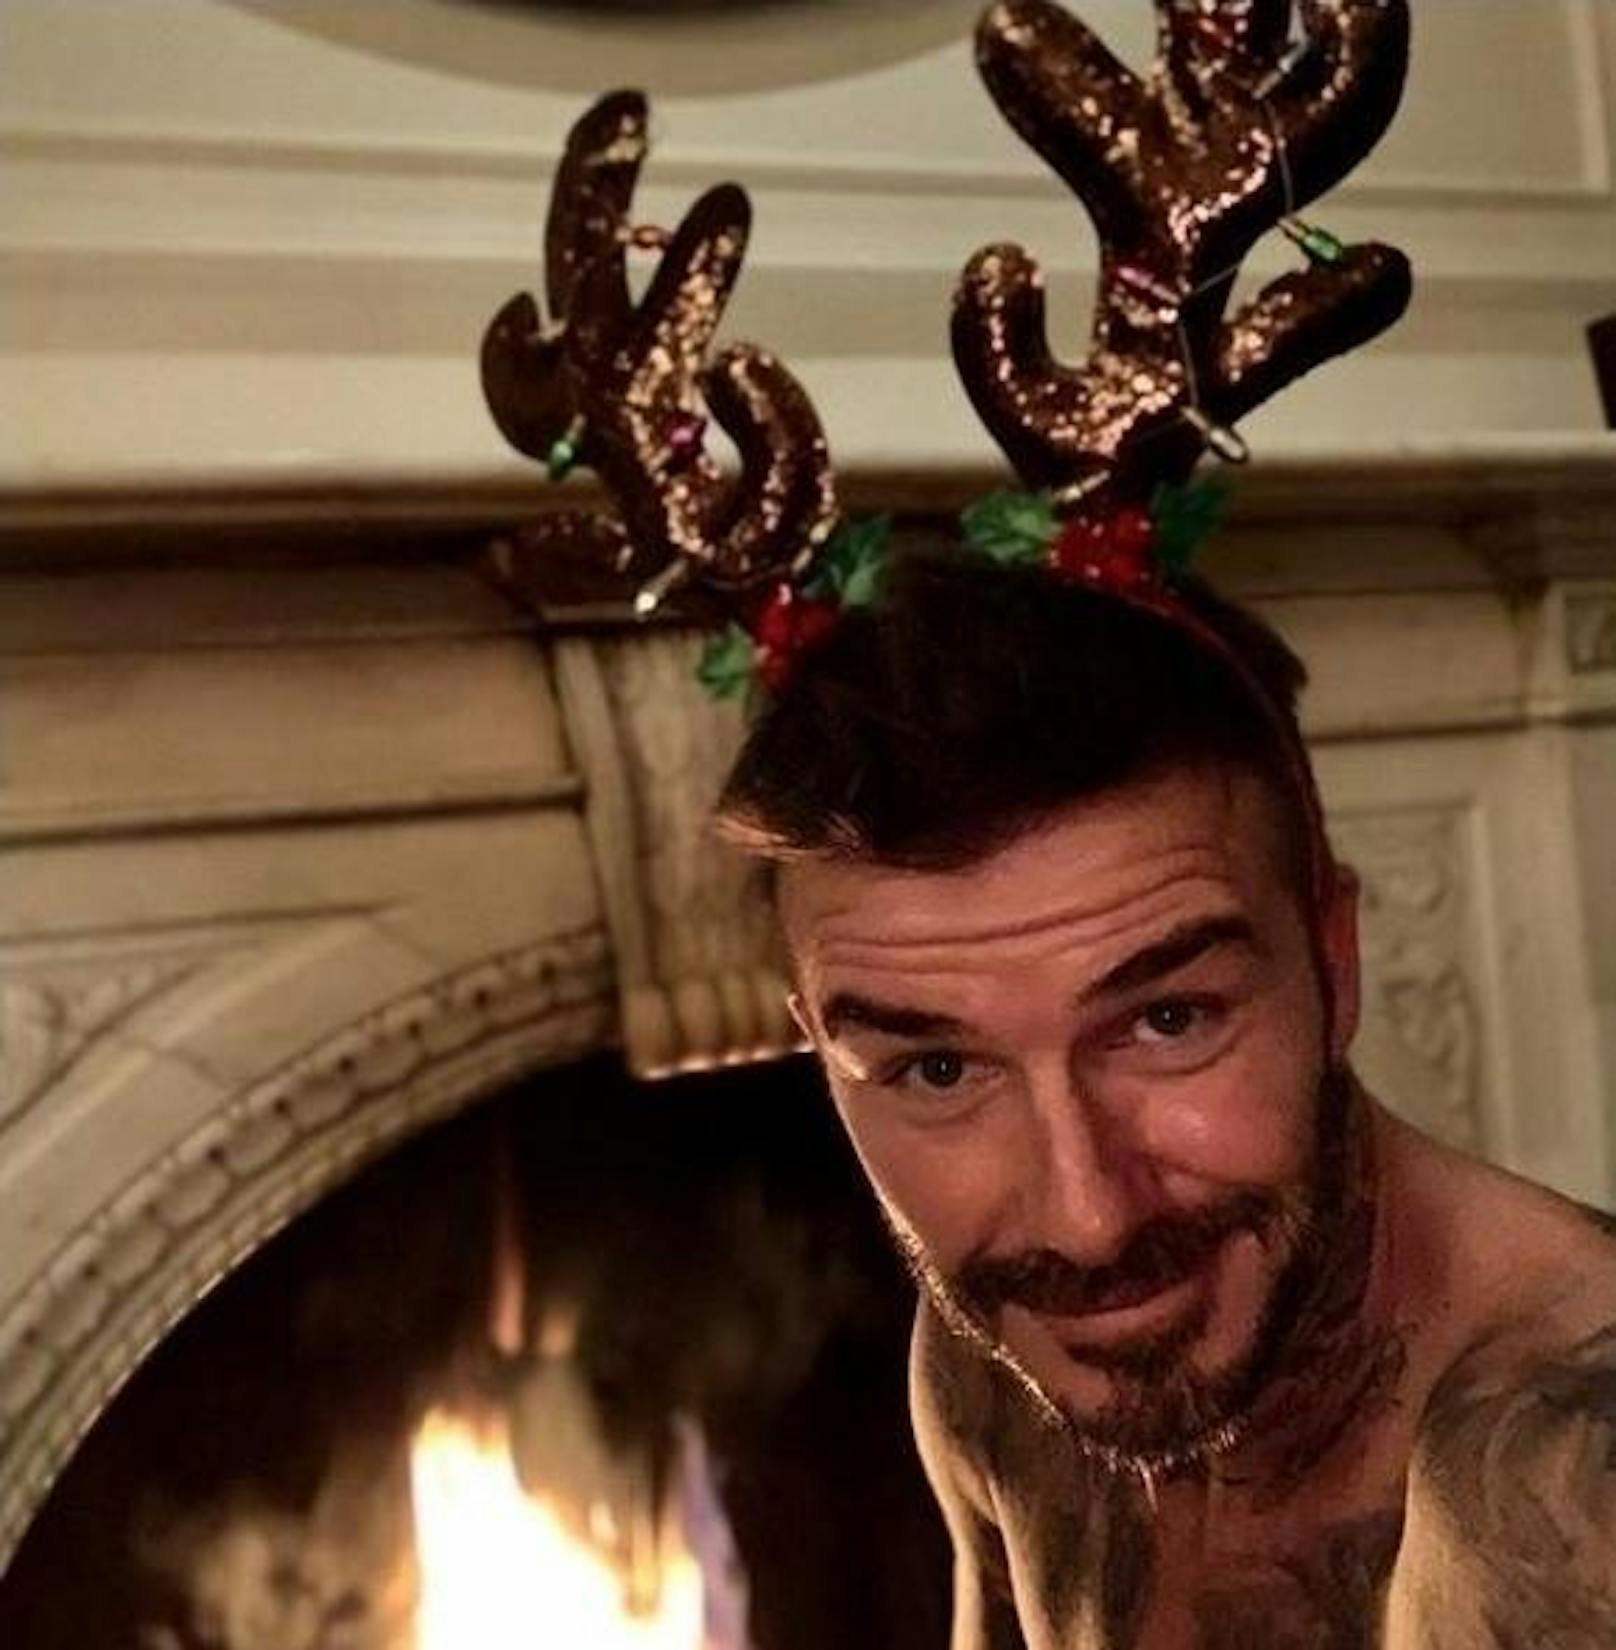 24.12.2018: David Beckham wünscht all seinen Fans ein frohes Weihnachtsfest. Mit nacktem Oberköper. Vor einem brennenden Kamin. Mit Rentiergeweih am Kopf.